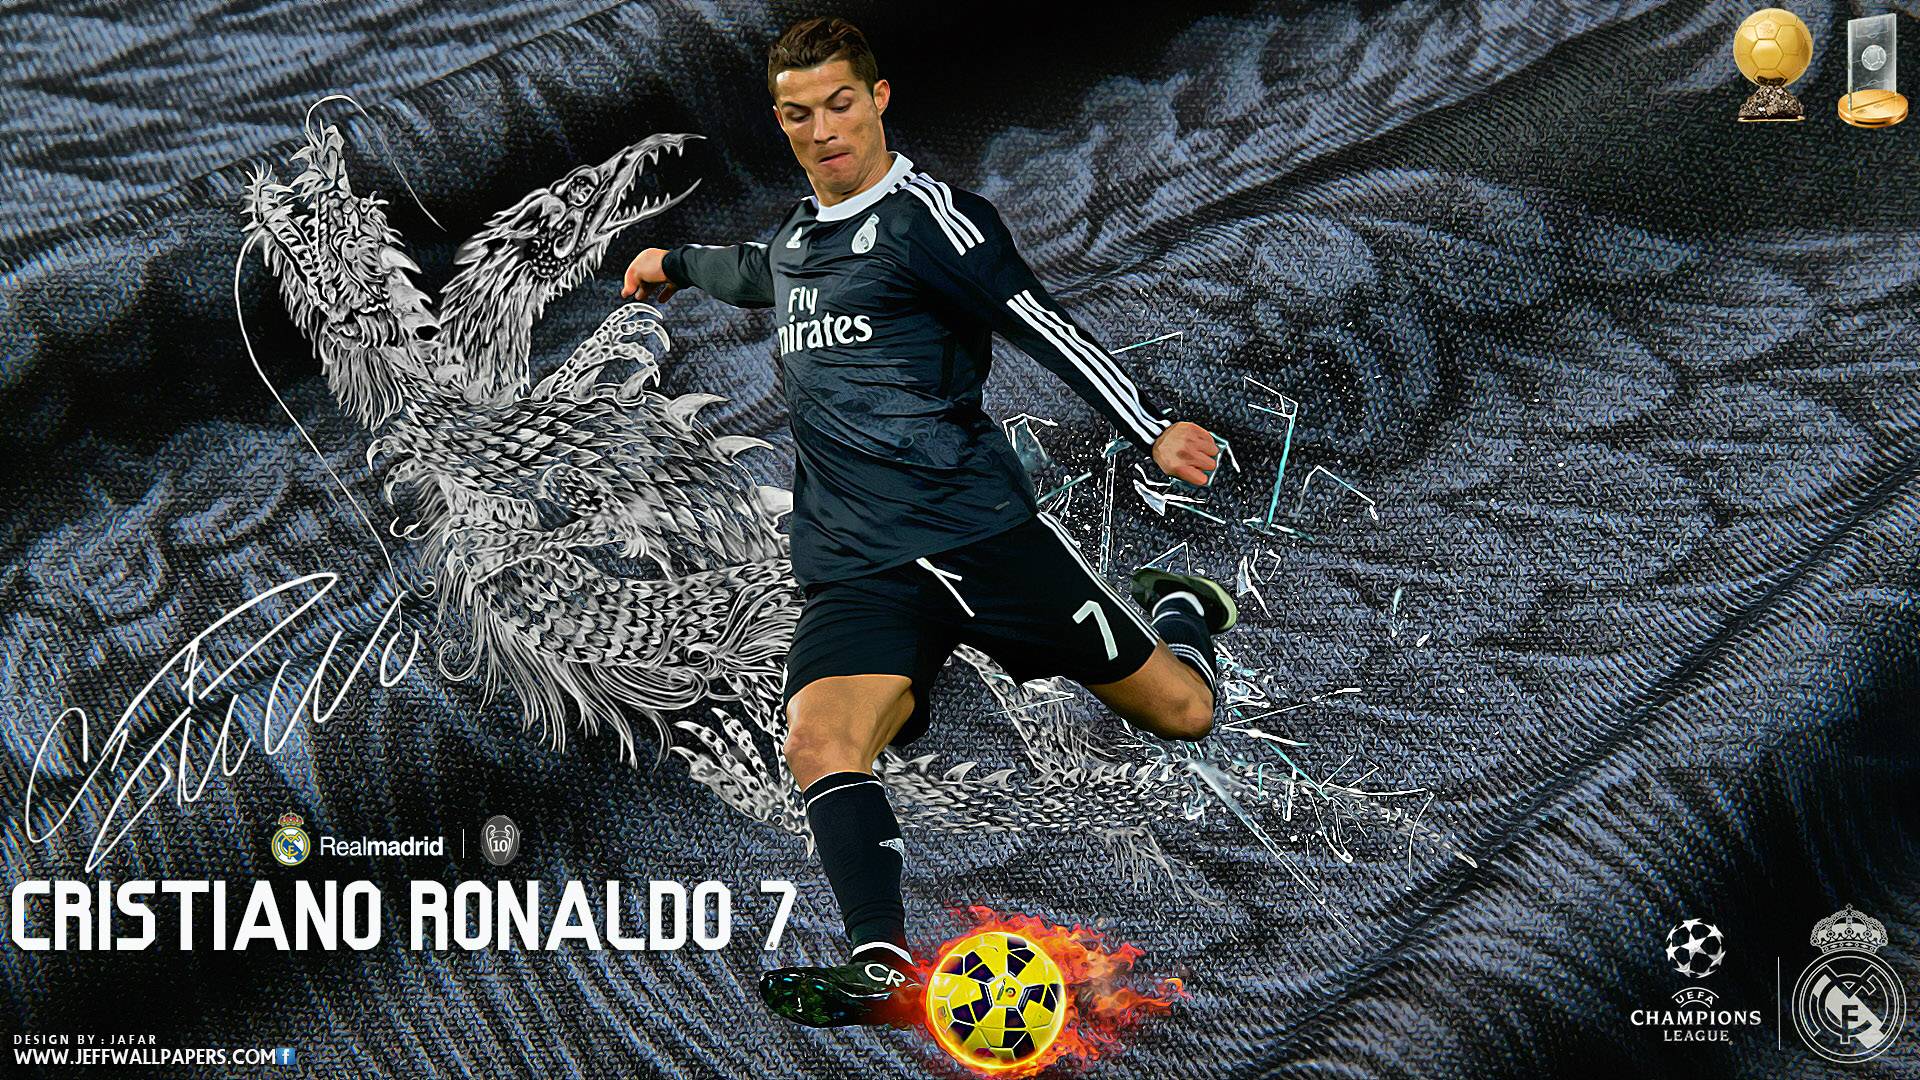 Cristiano Ronaldo 2015 Real Madrid FIFA Ballon d&;Or Wallpaper Wide